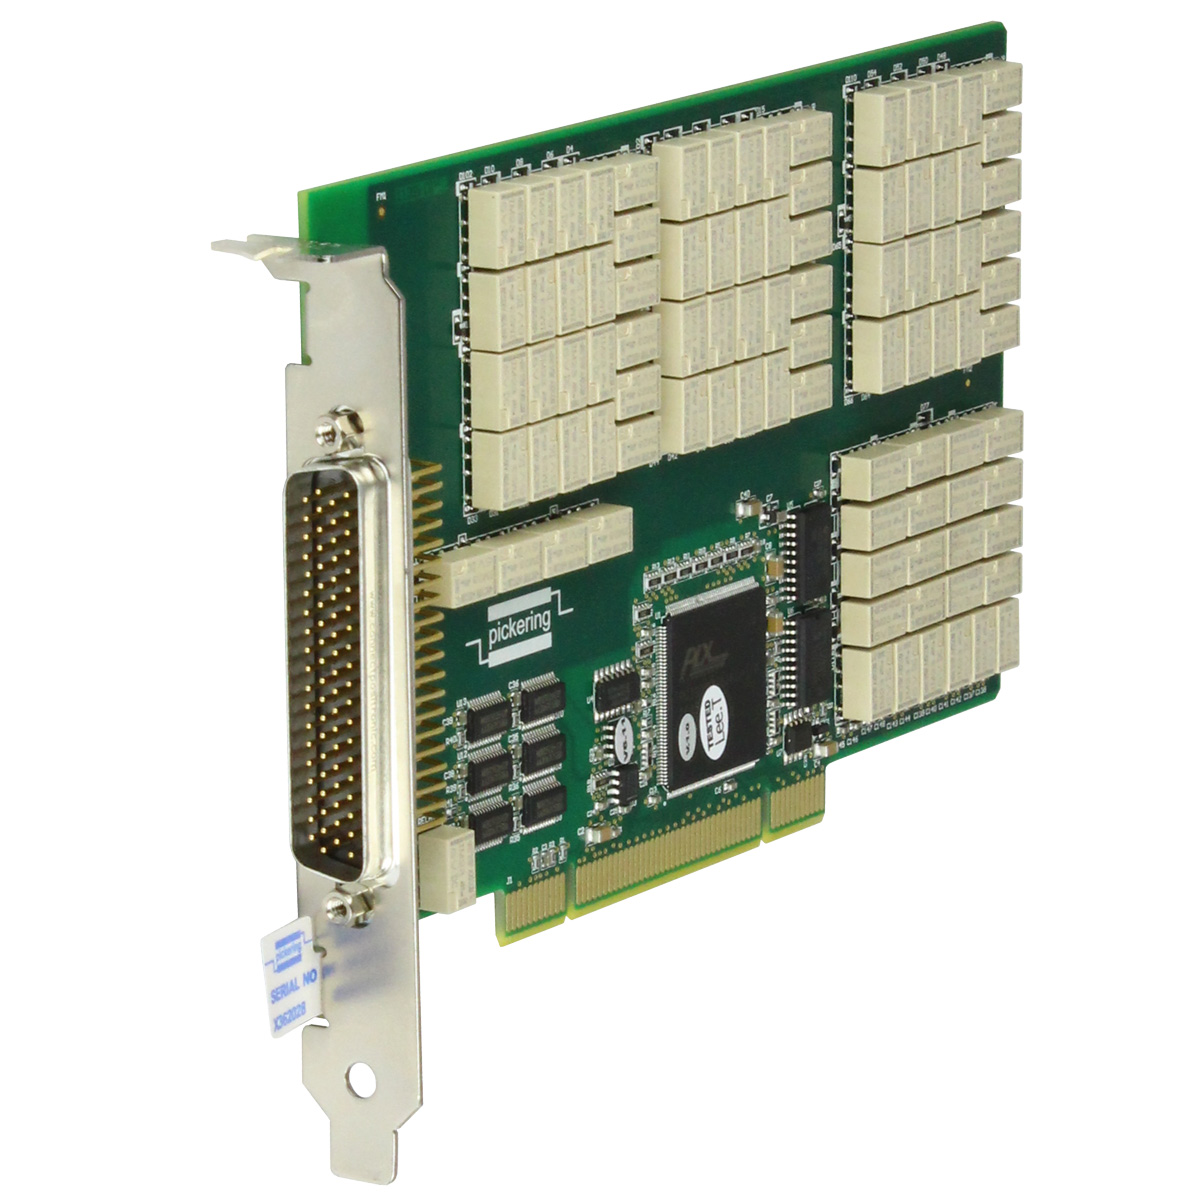 50-297 PCI Precision Resistor Card